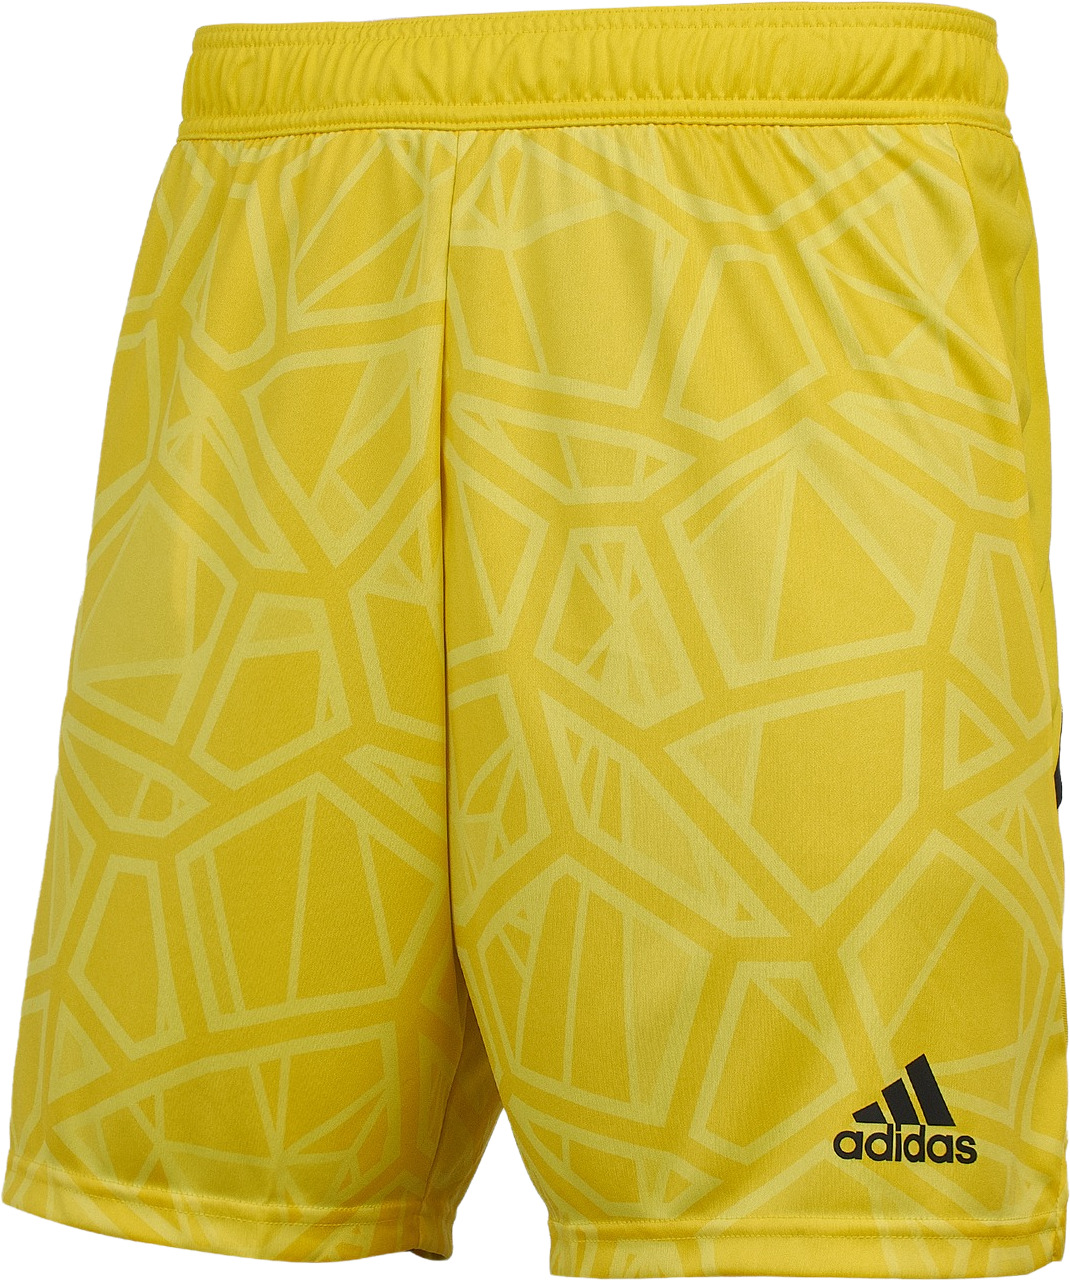 Шорты мужские Adidas HF0141 желтые S